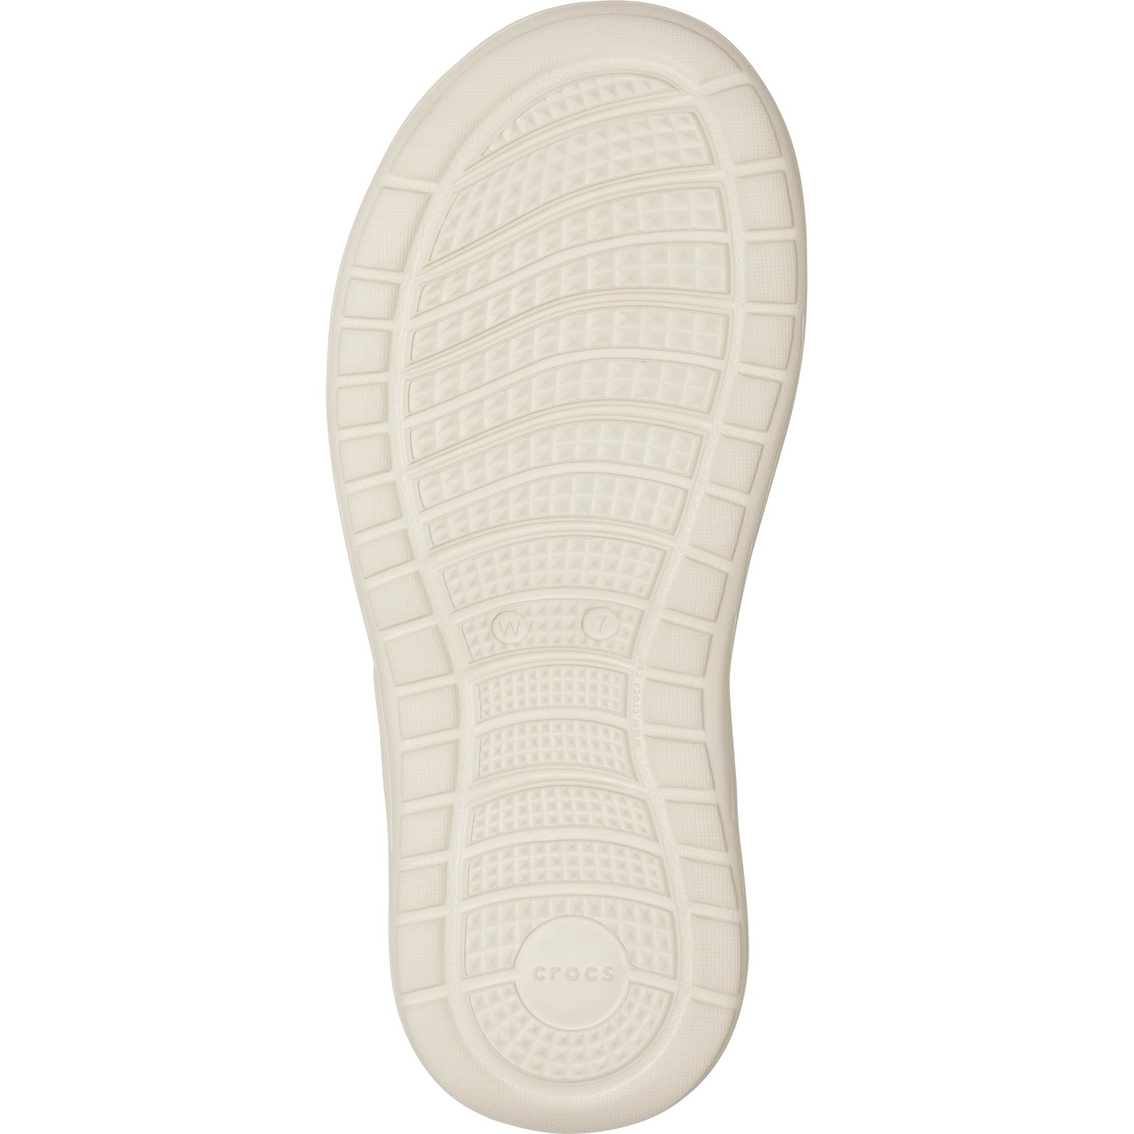 Crocs Women's Reviva Flip Flops - Image 5 of 5